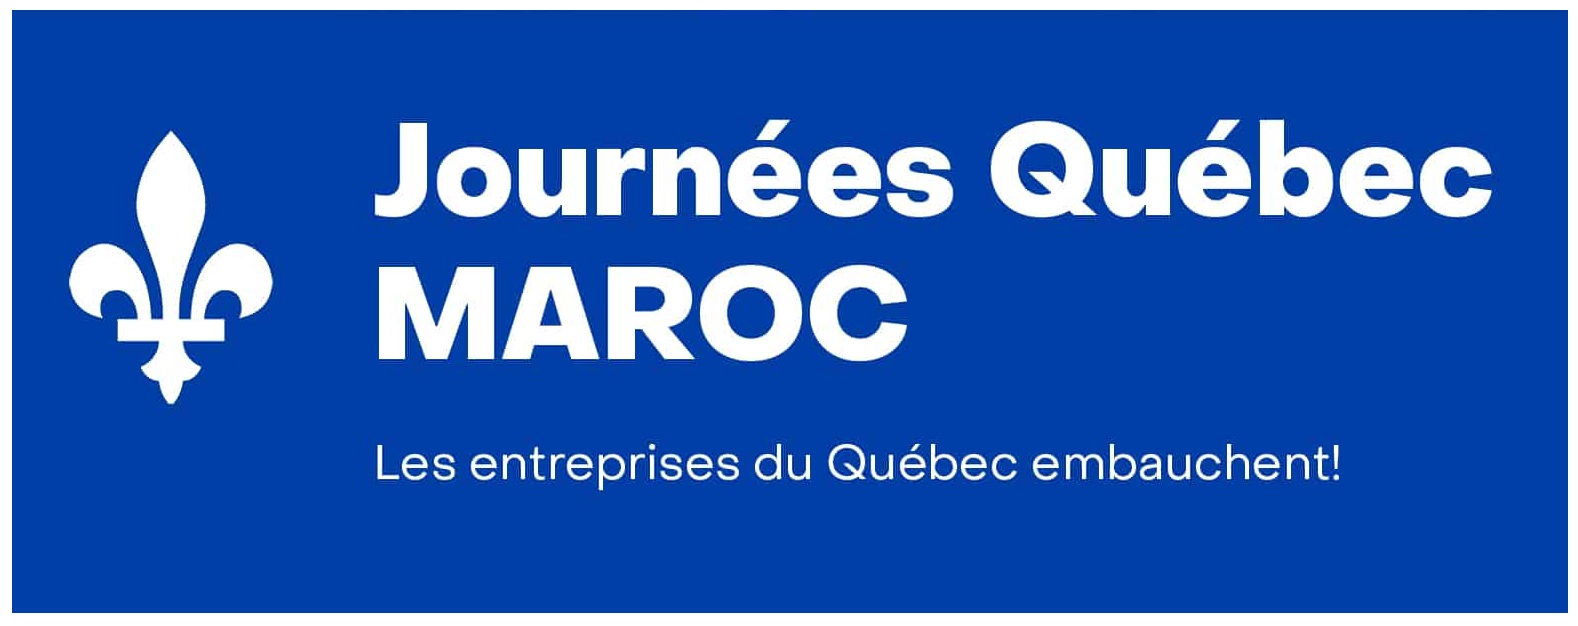 Inscriptions Ouvertes Journées Québec Canada Maroc